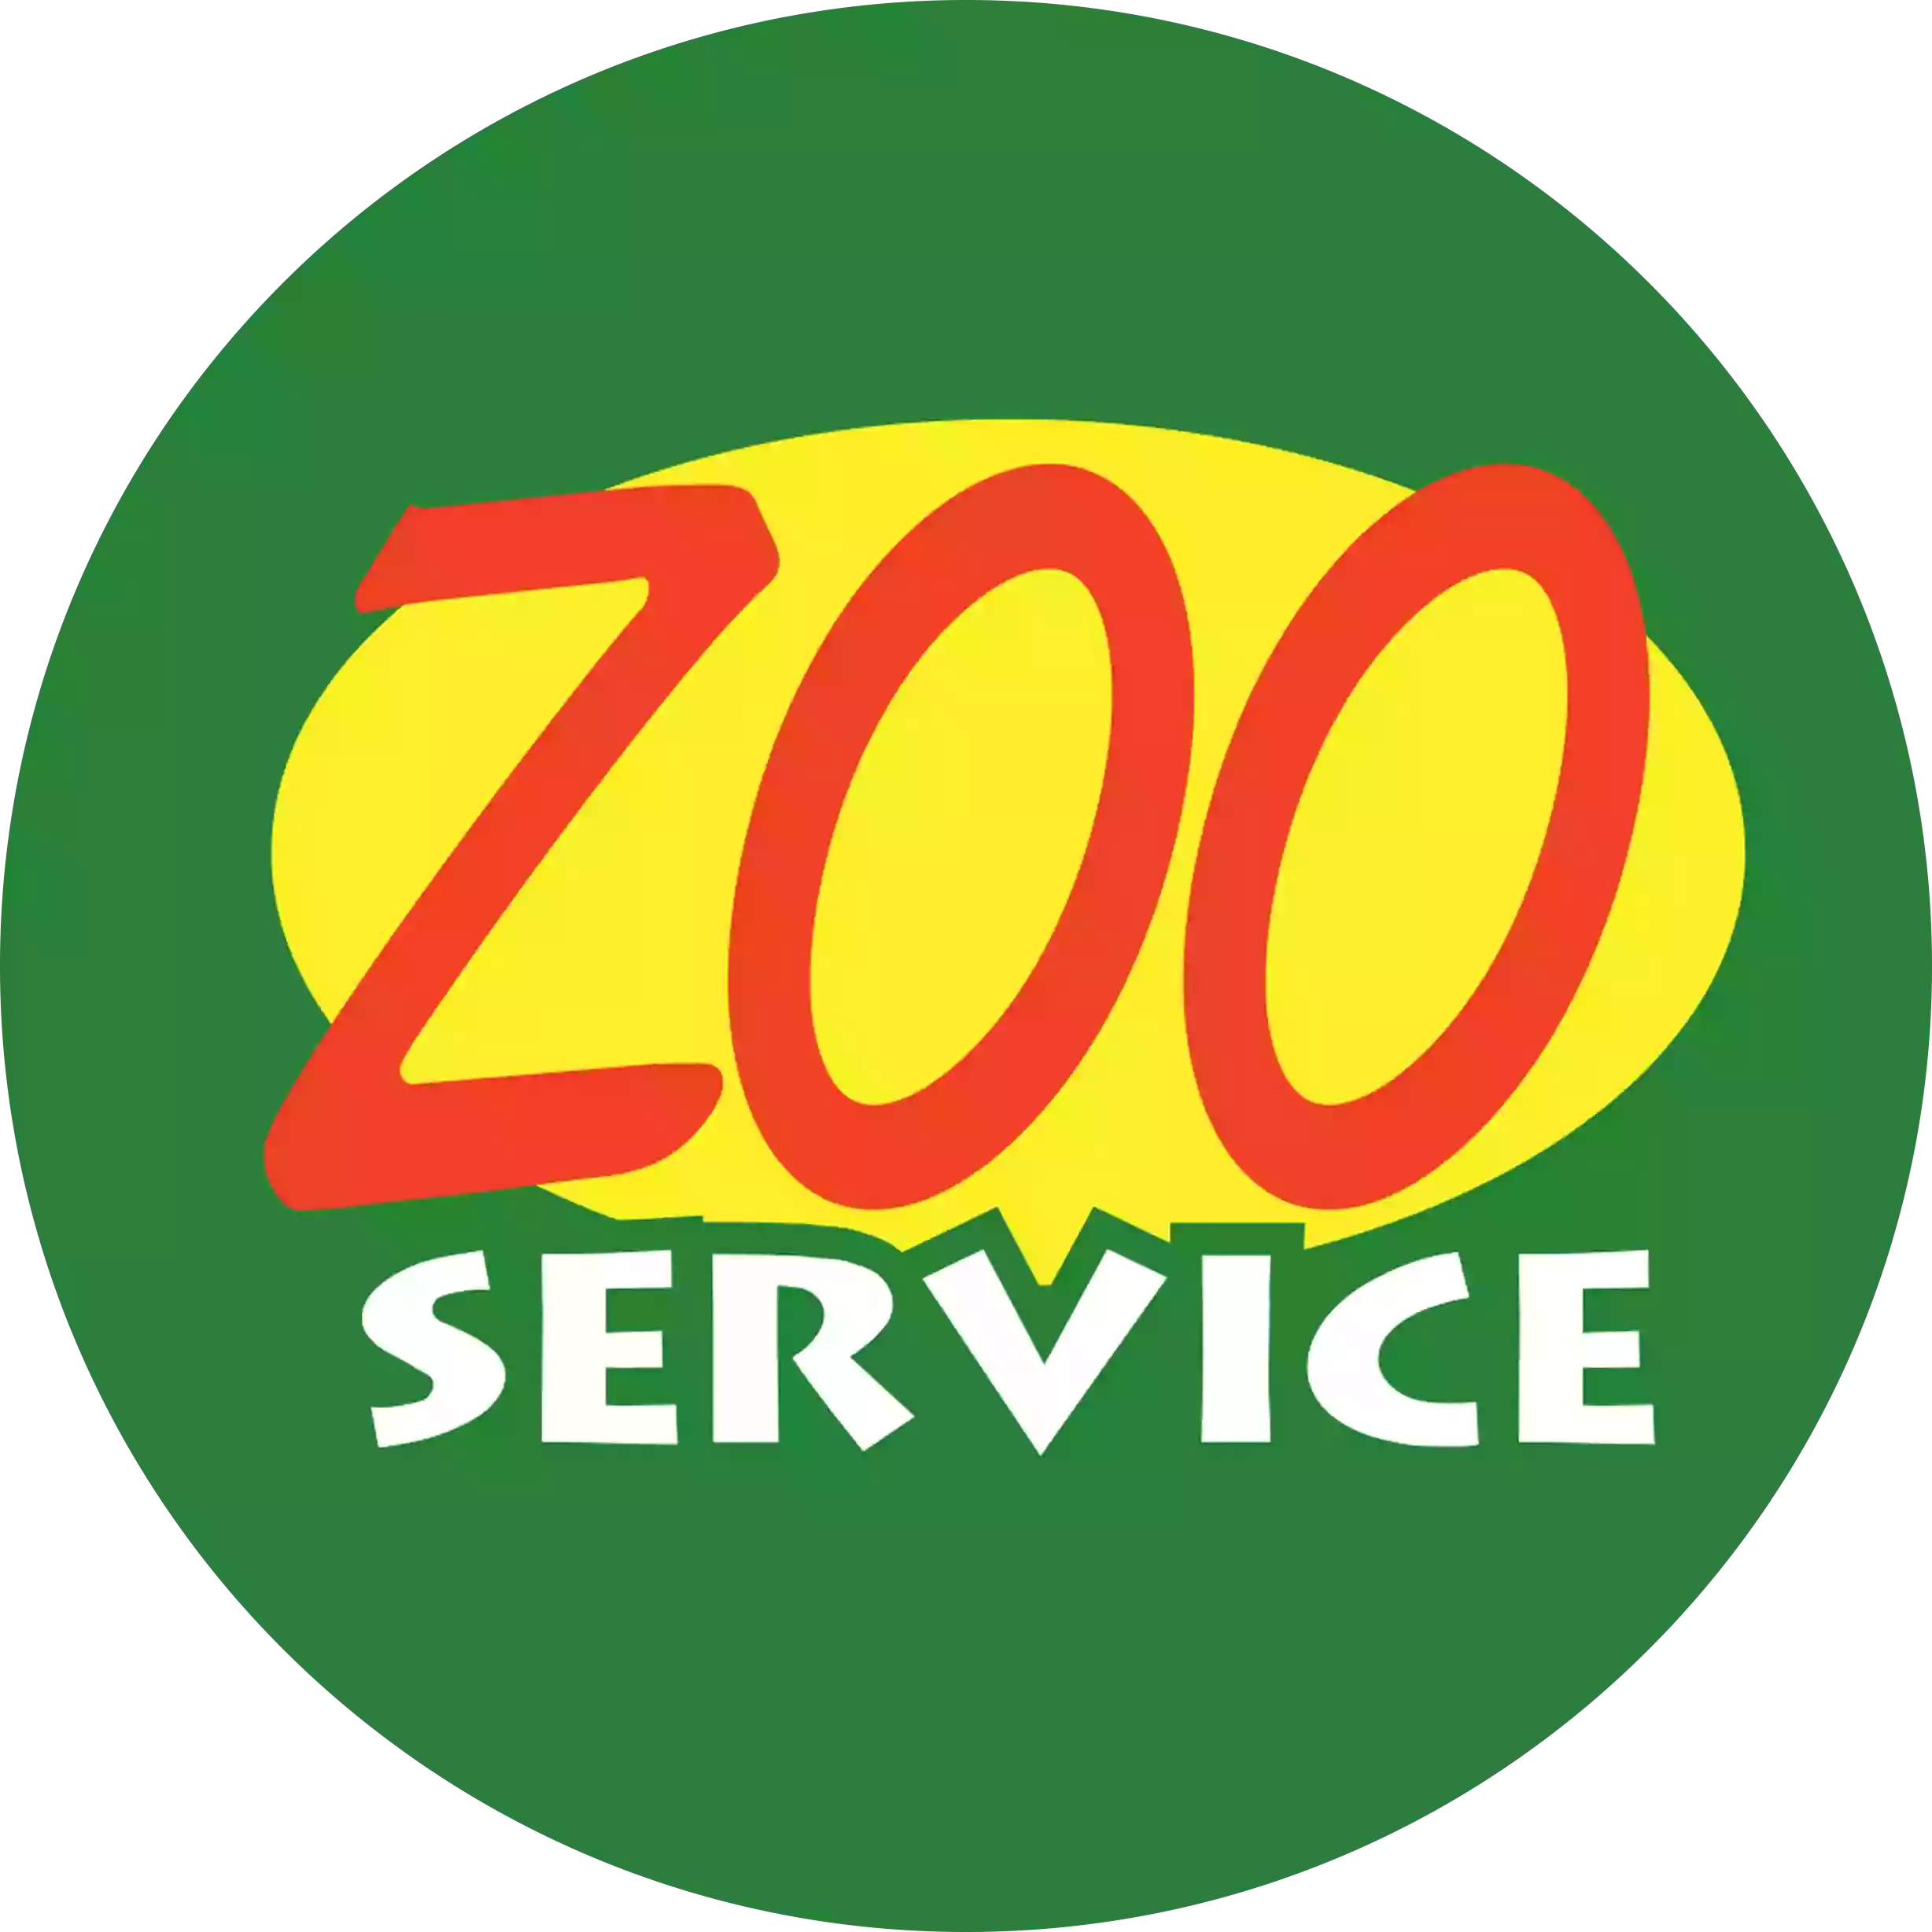 Zoo Service - Centro Guadagna